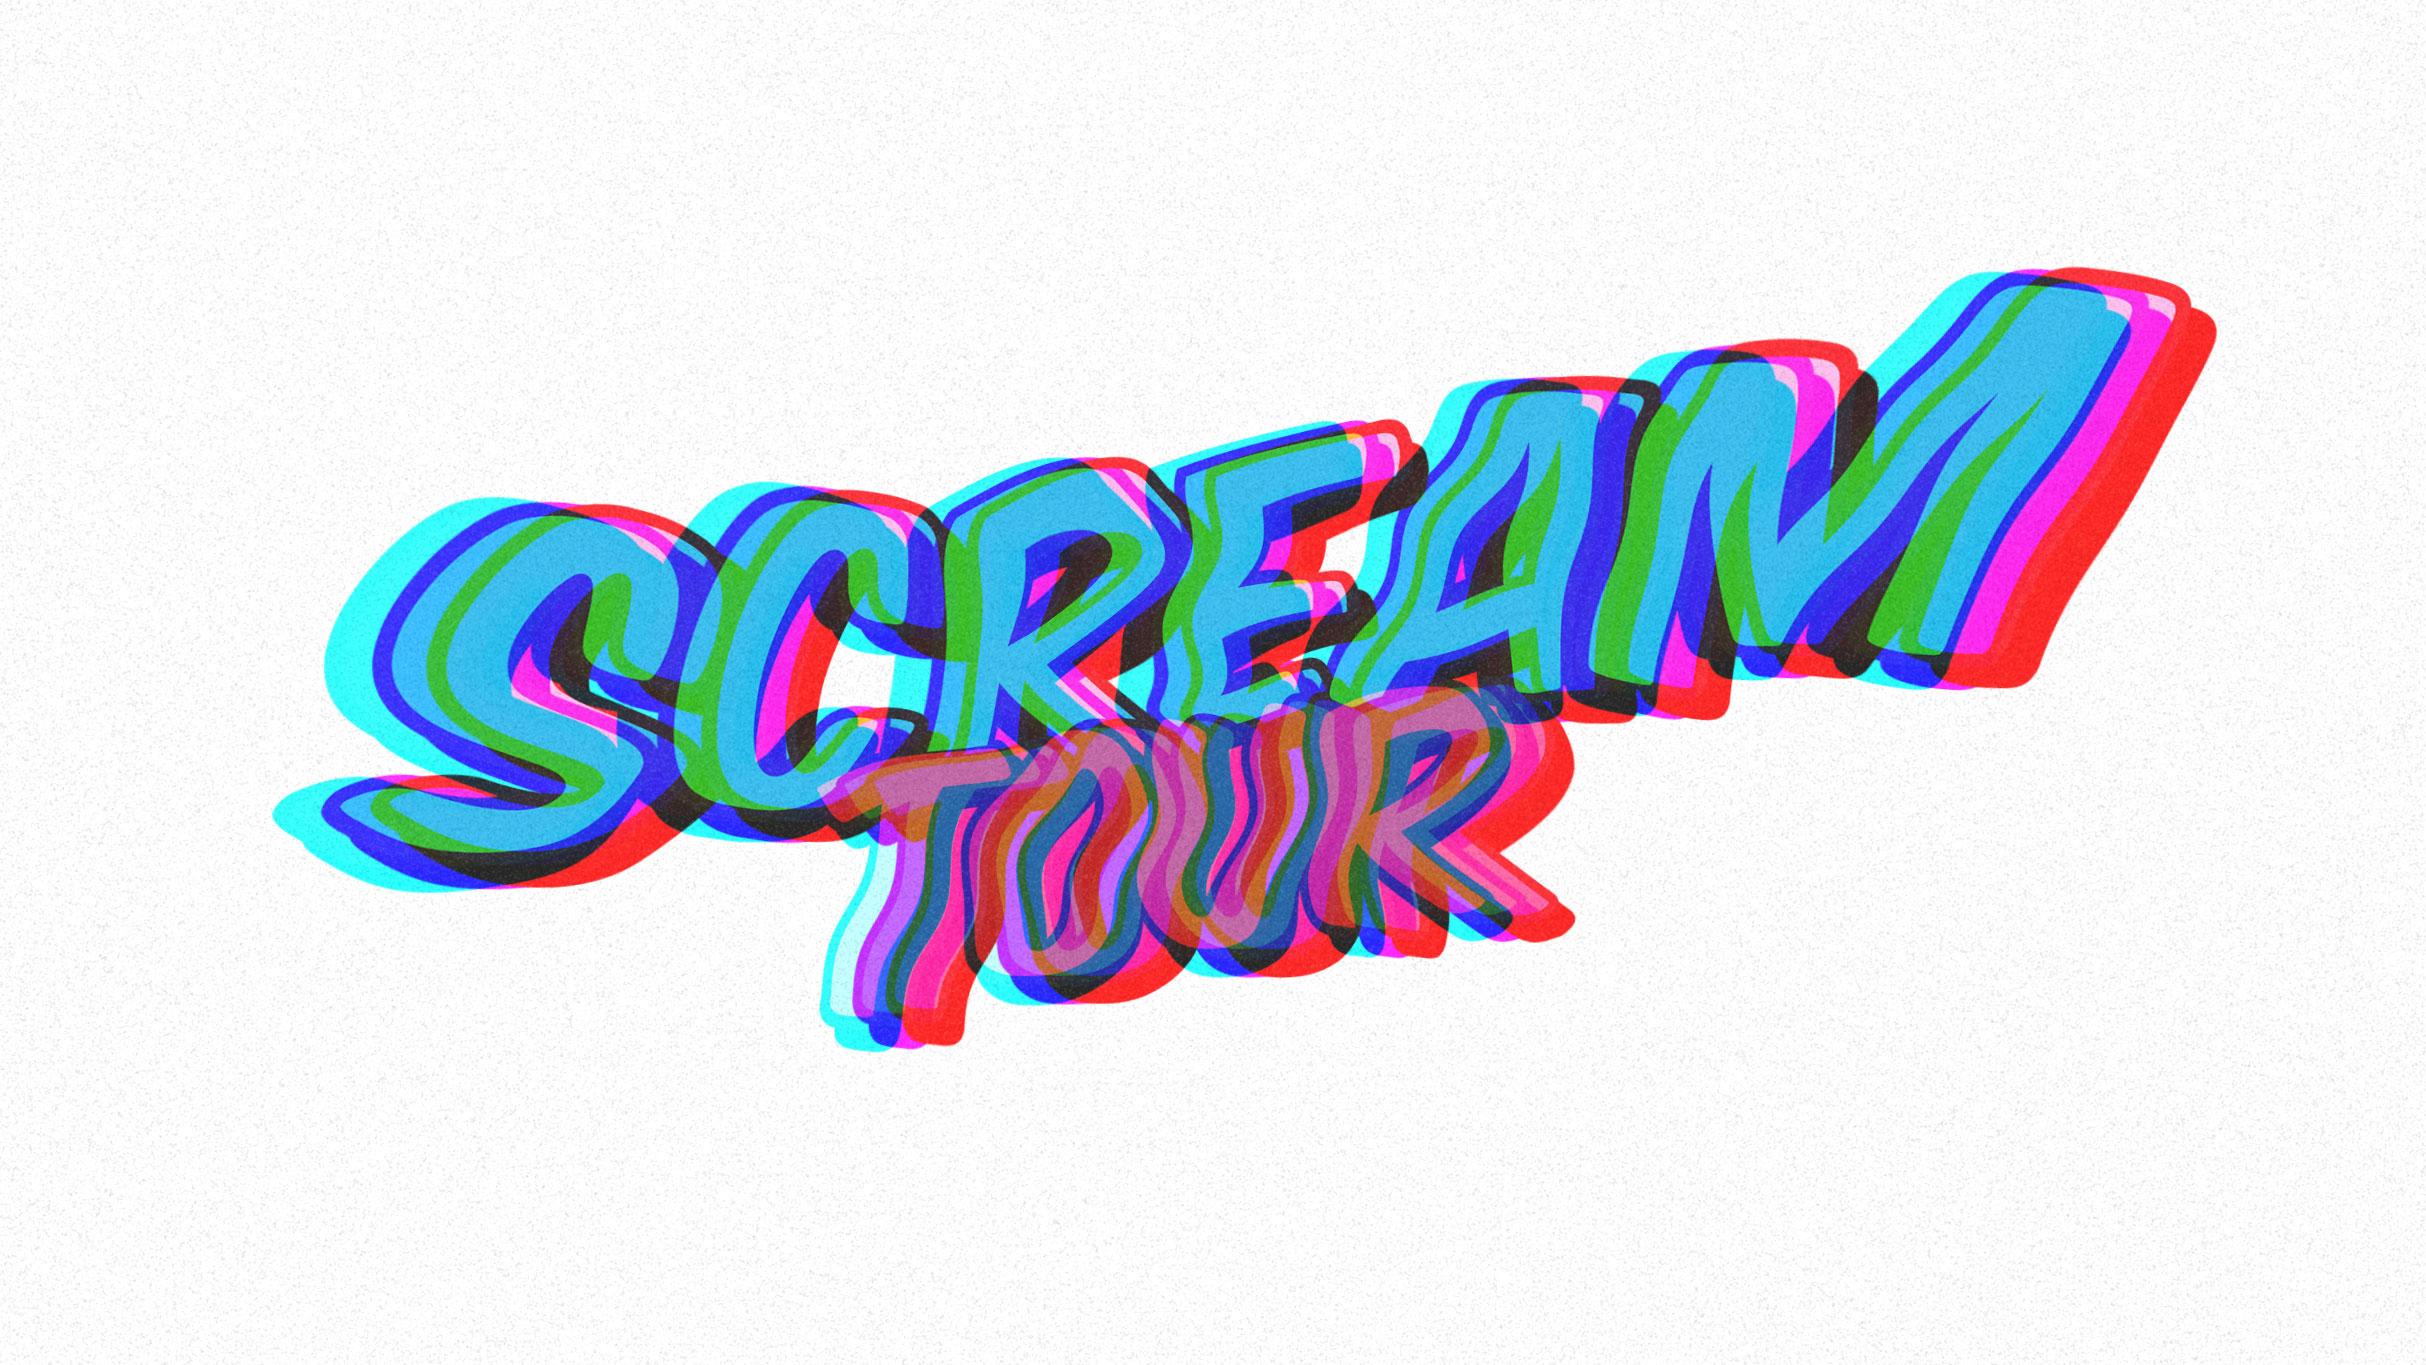 Scream Tour 2023